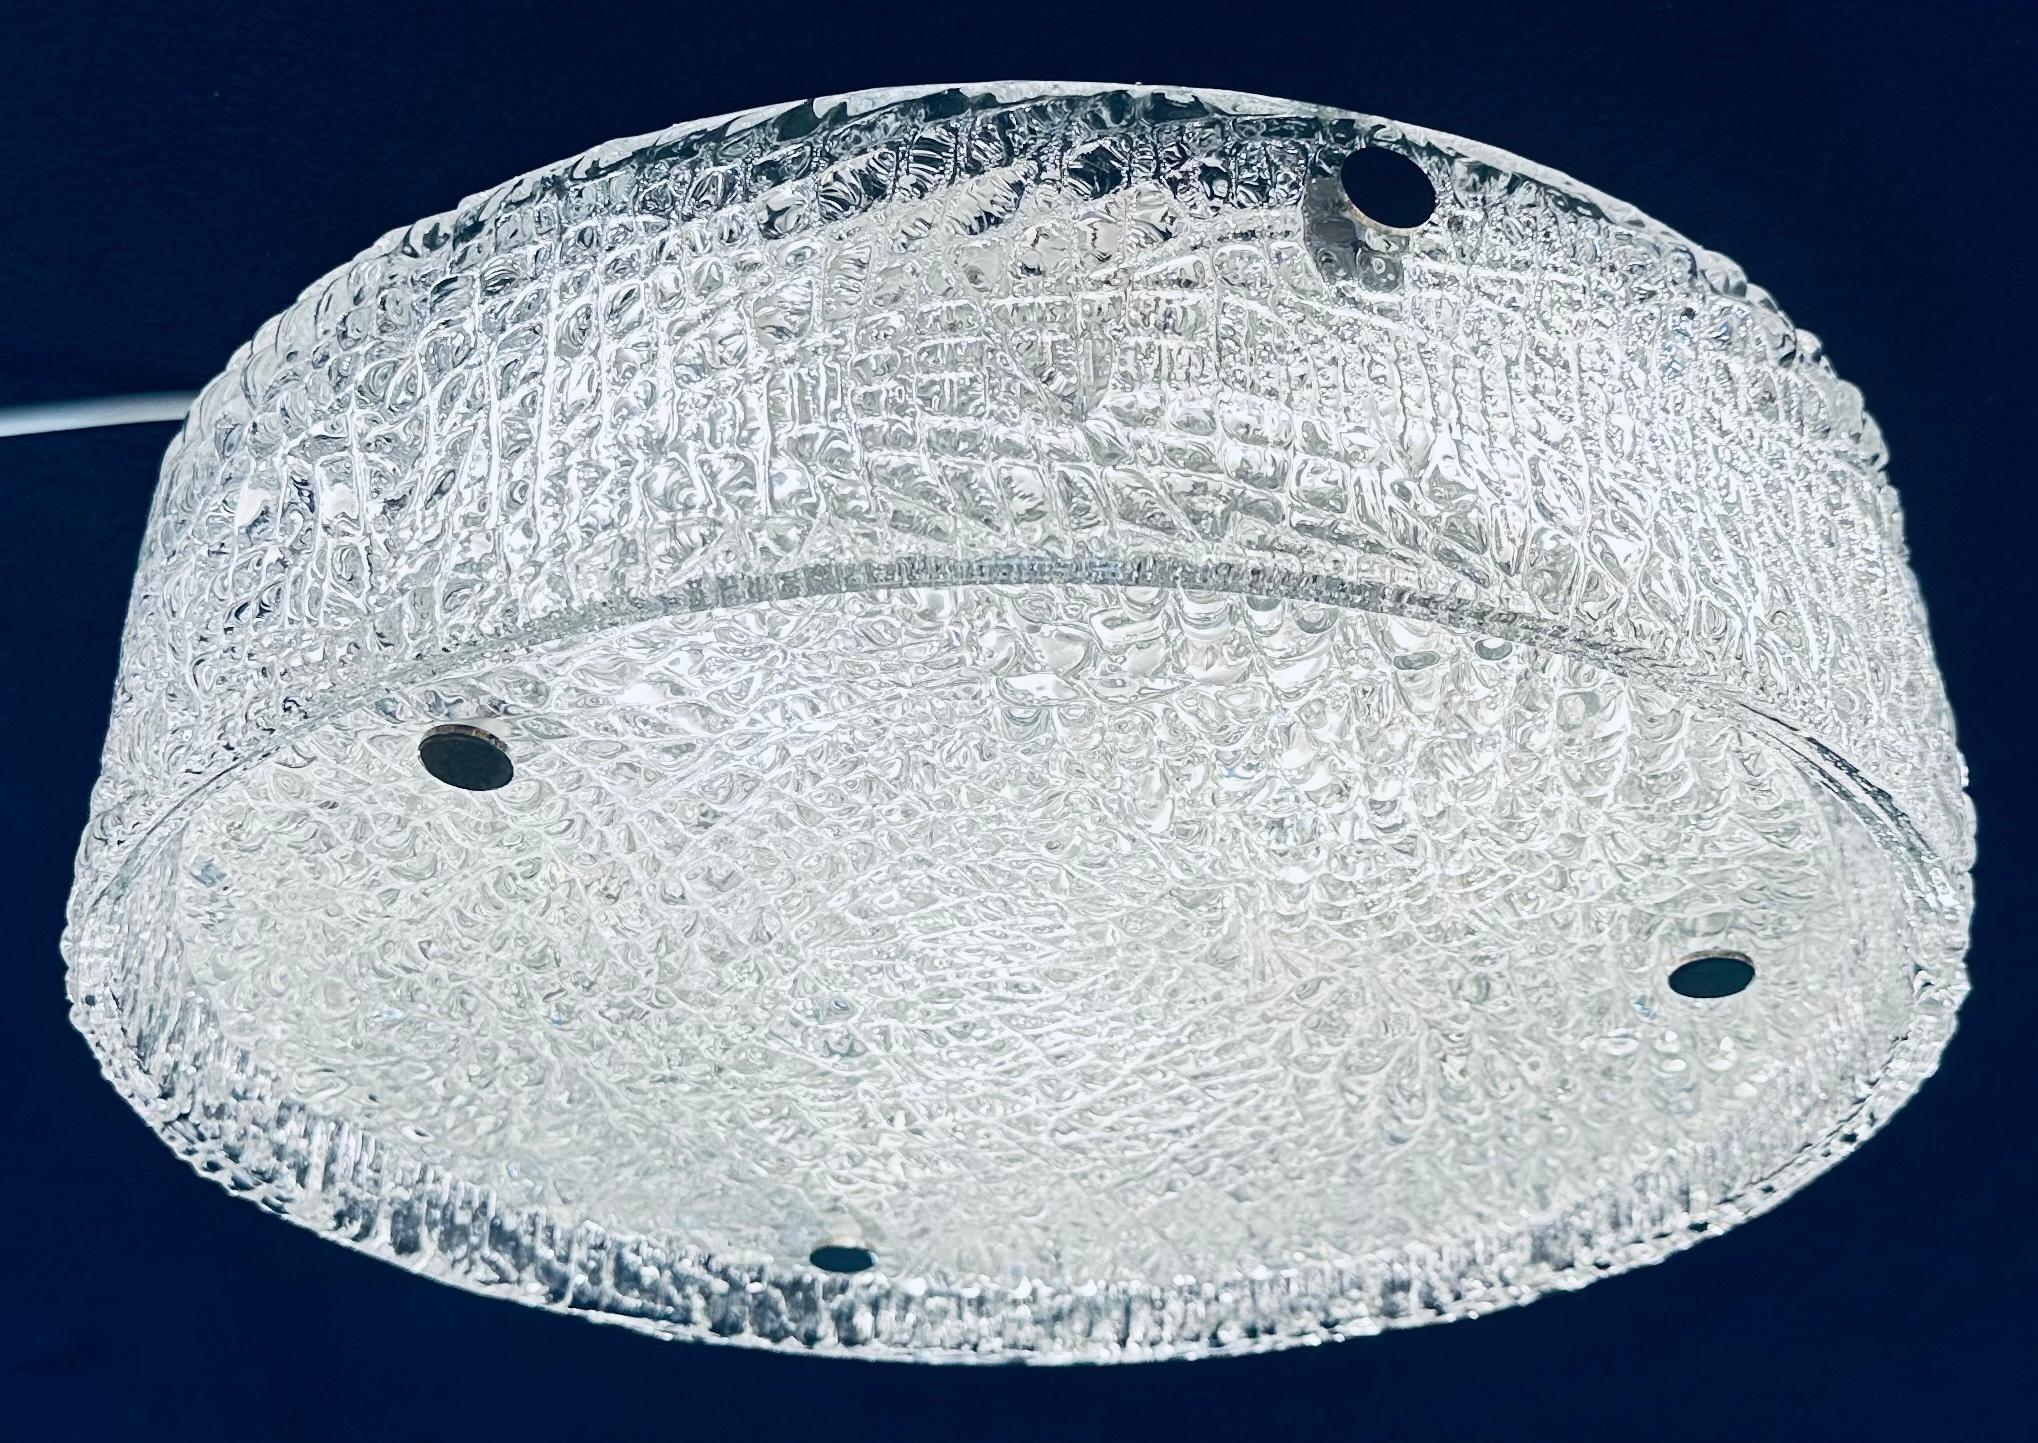 Deutsche Kaiser Leuchten aus den 1960er Jahren, strukturiertes Eisglas, bündig montierte Deckenleuchte. Die kreisförmige Grundplatte aus dickem, strukturiertem Glas wird mit drei Chromschrauben auf dem weißen Rahmen befestigt, um sie zu fixieren.